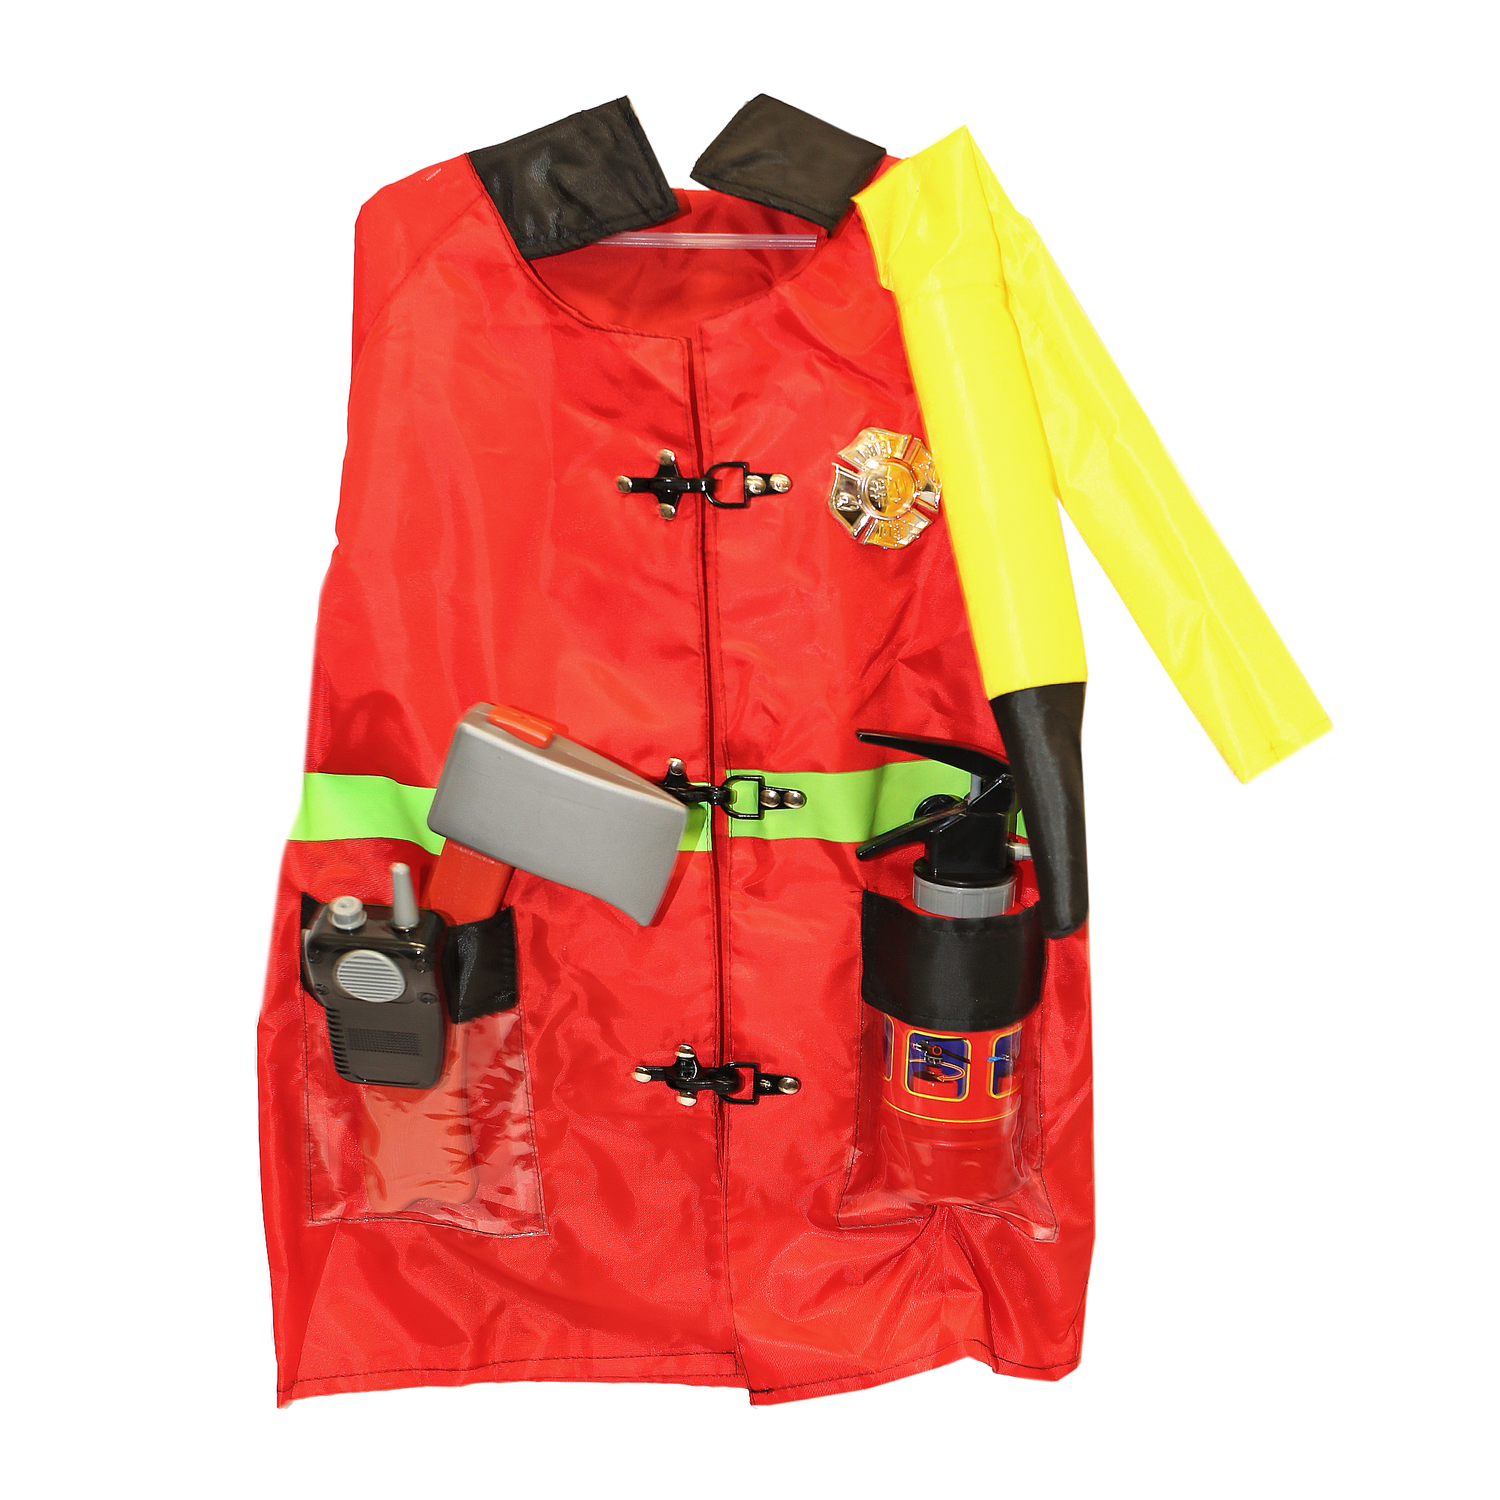 Игровой костюм Пожарный SHARKTOYS карнавальный костюм с аксессуарами от 3 до 8 лет 1000000070 - фото 6